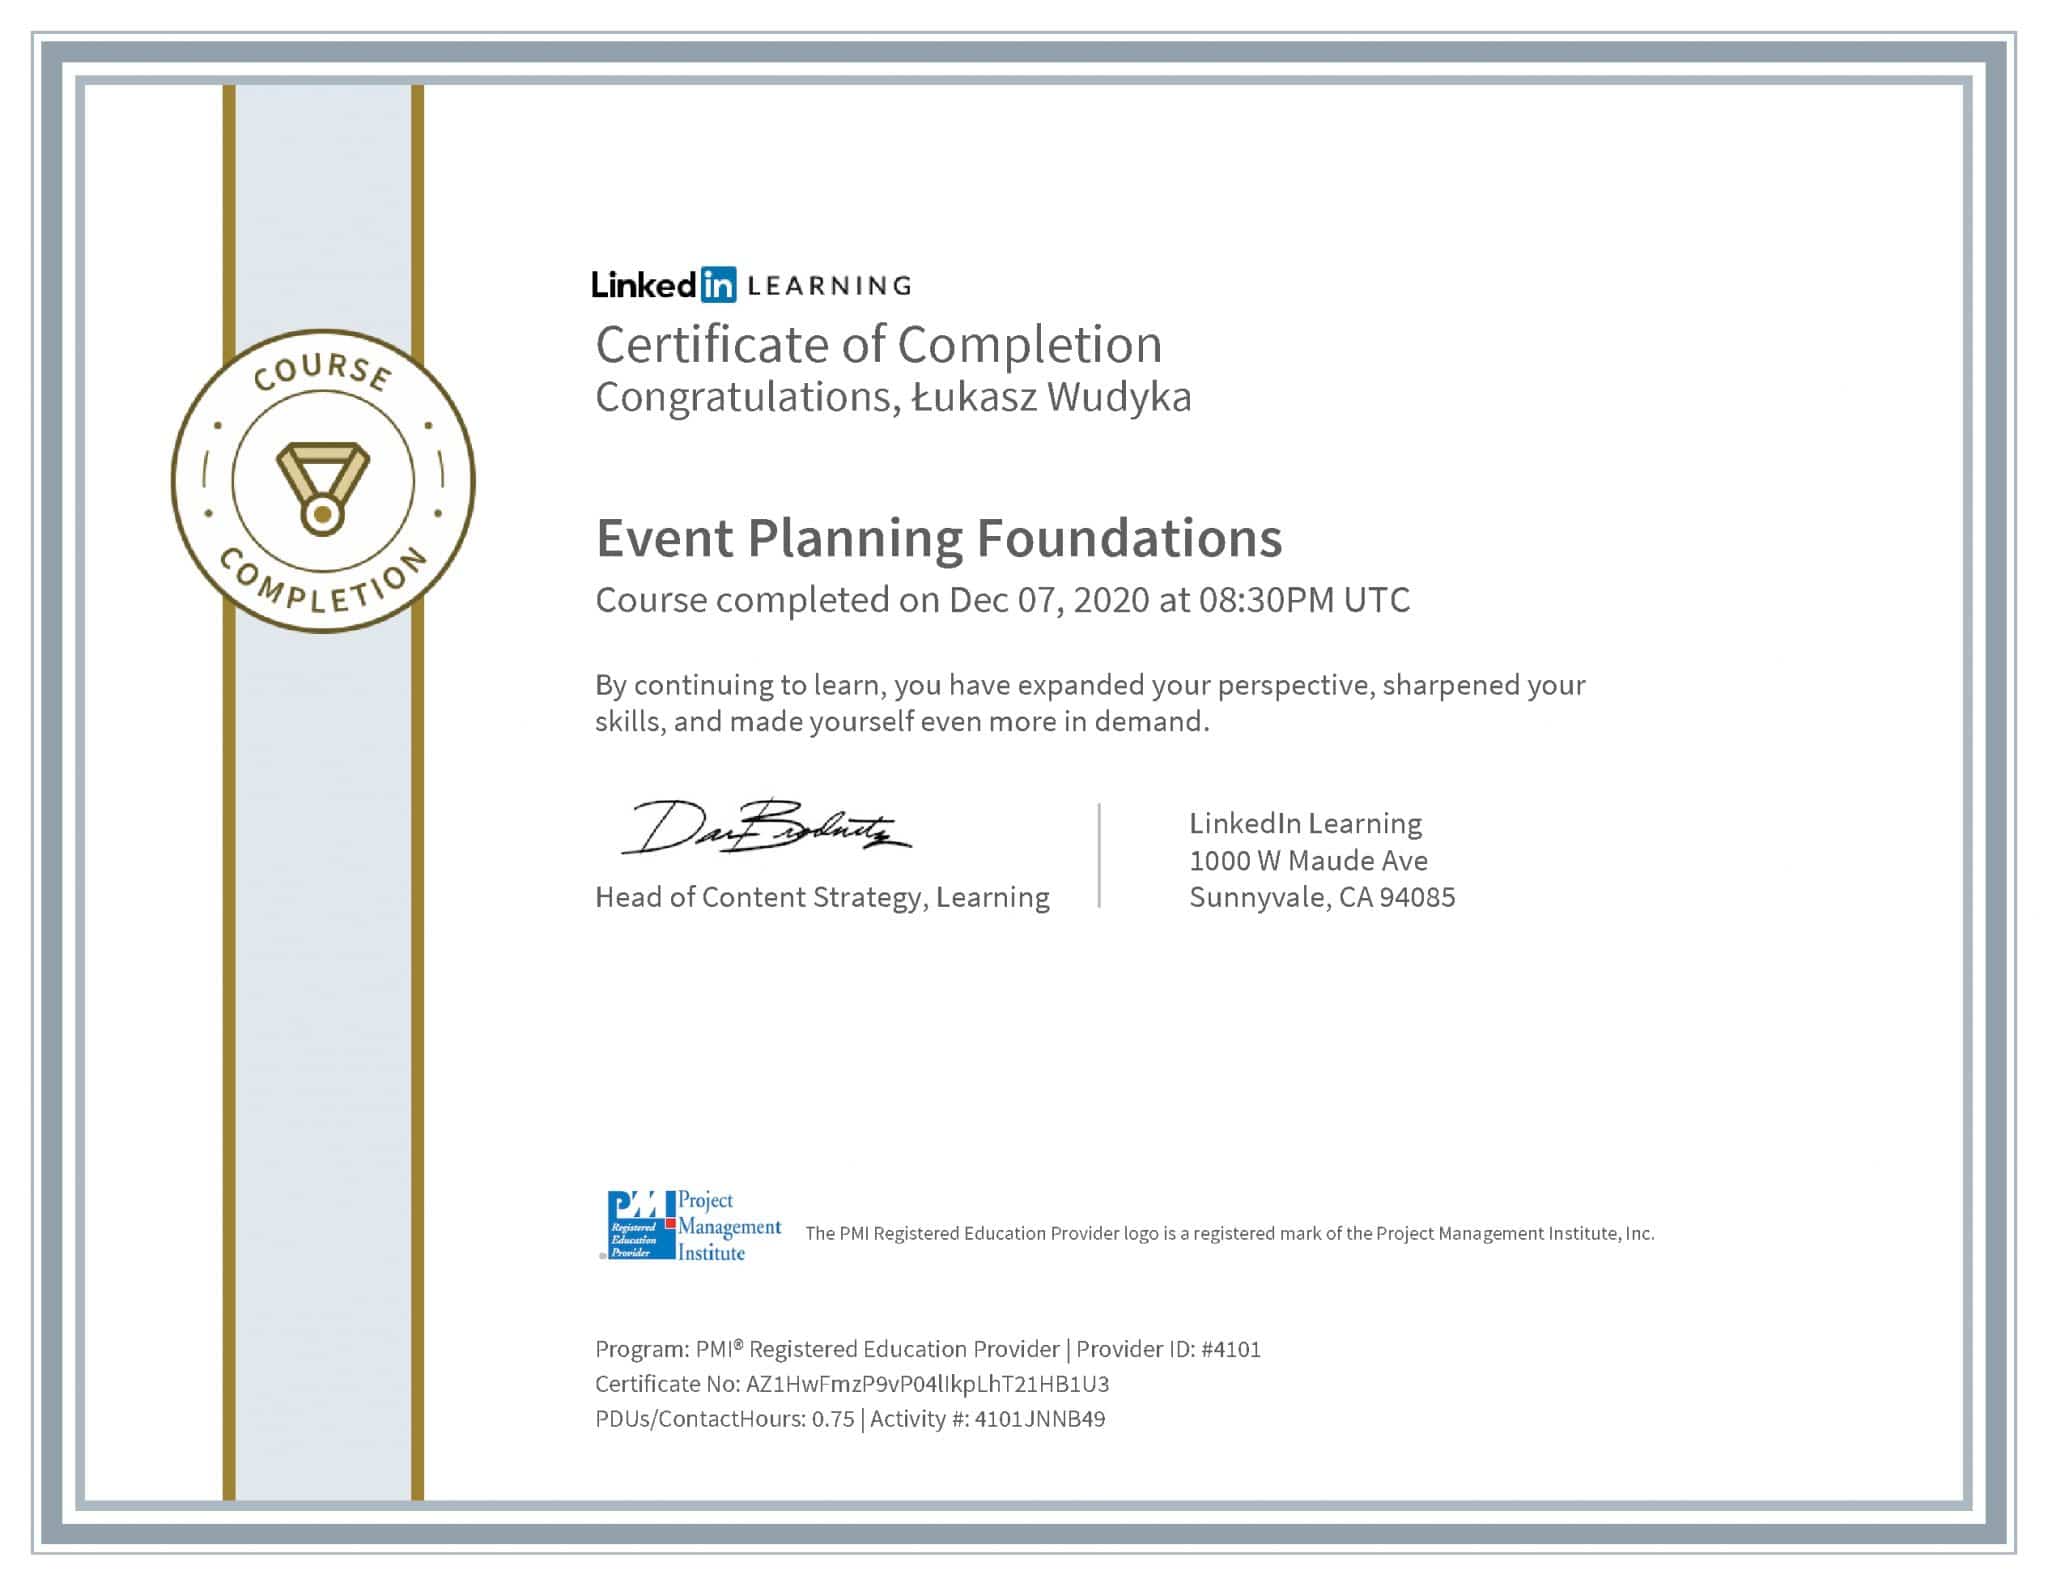 Łukasz Wudyka certyfikat LinkedIn Event Planning Foundations PMI